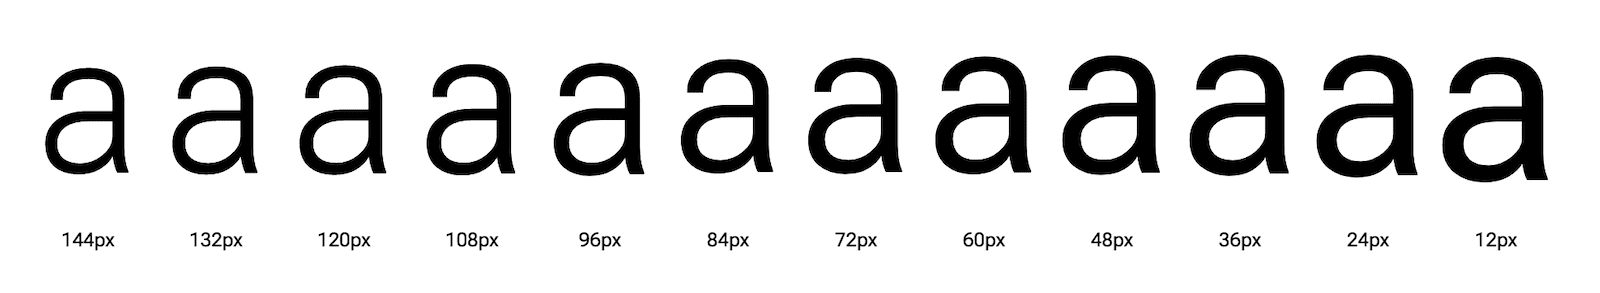 以不同光学尺寸显示的字母“a”